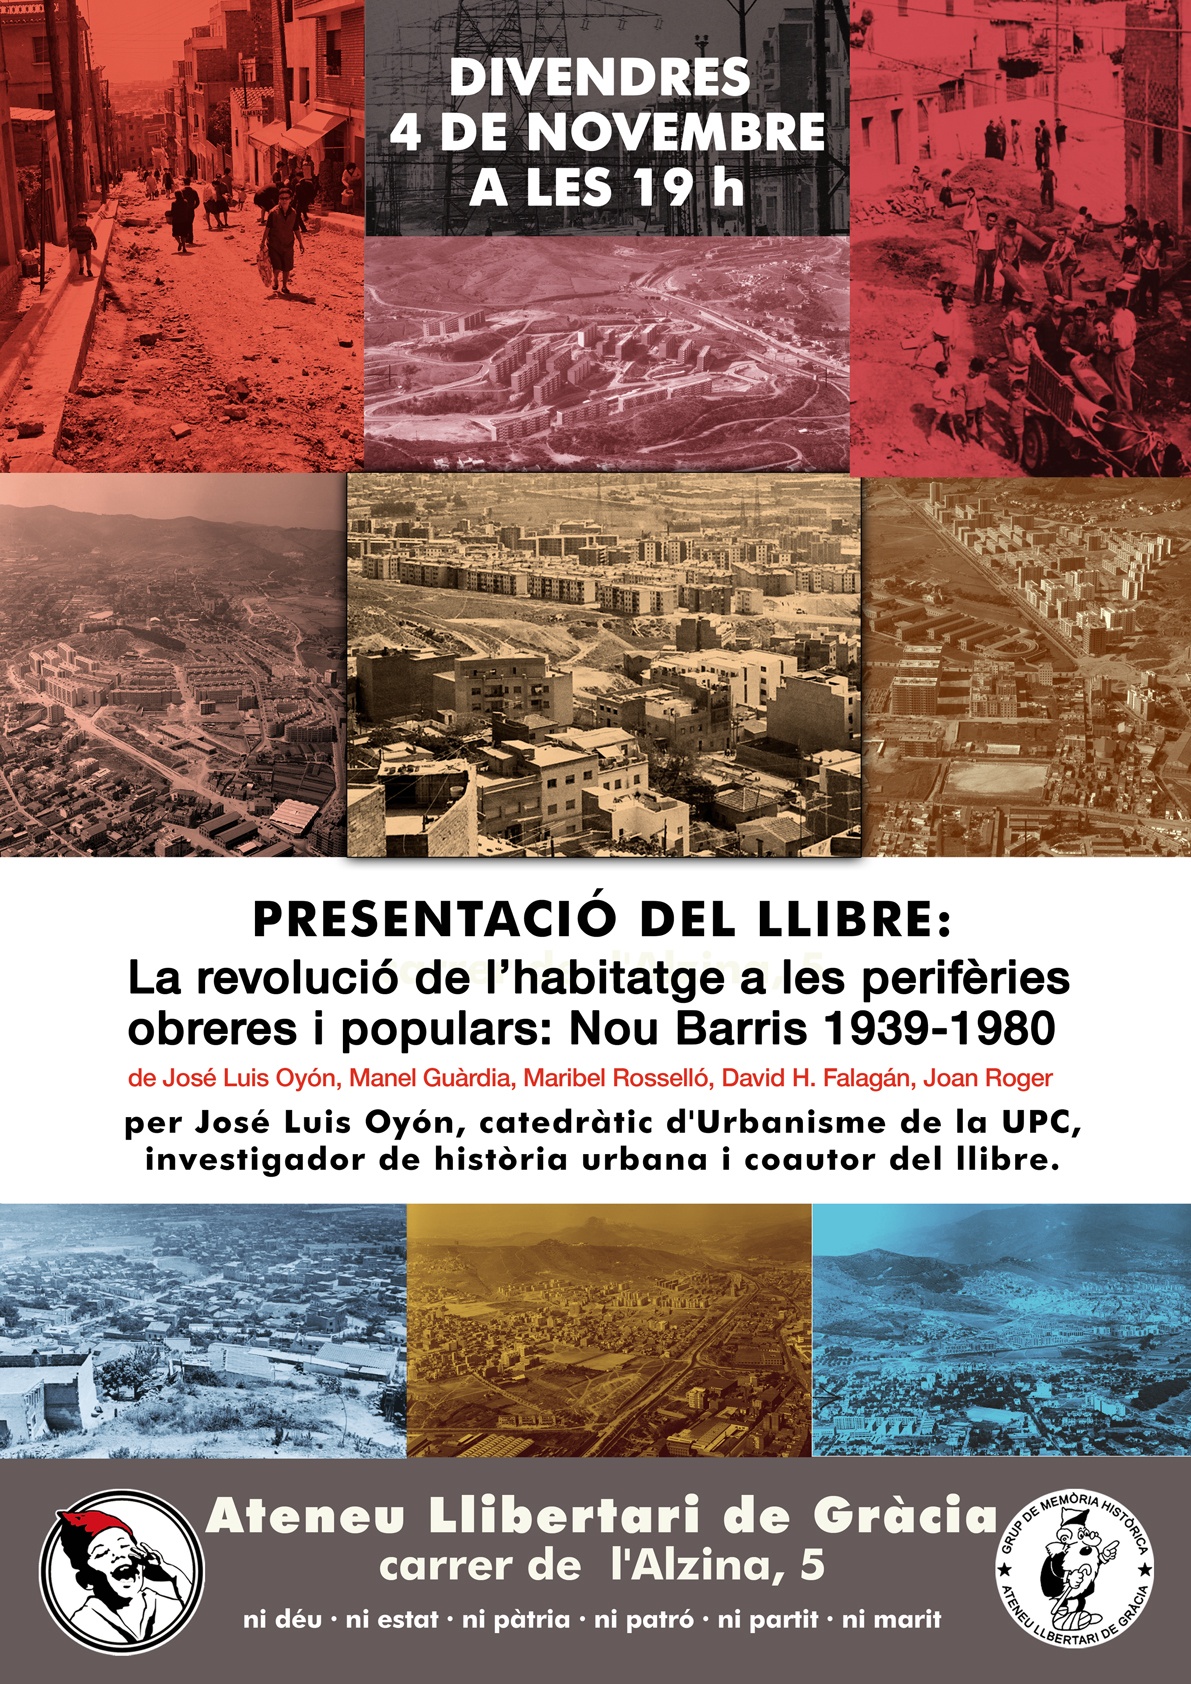 Presentació del llibre: "La revolució de l'habitatge a les perifèries obreres i populars: Nou Barris 1939-1989"